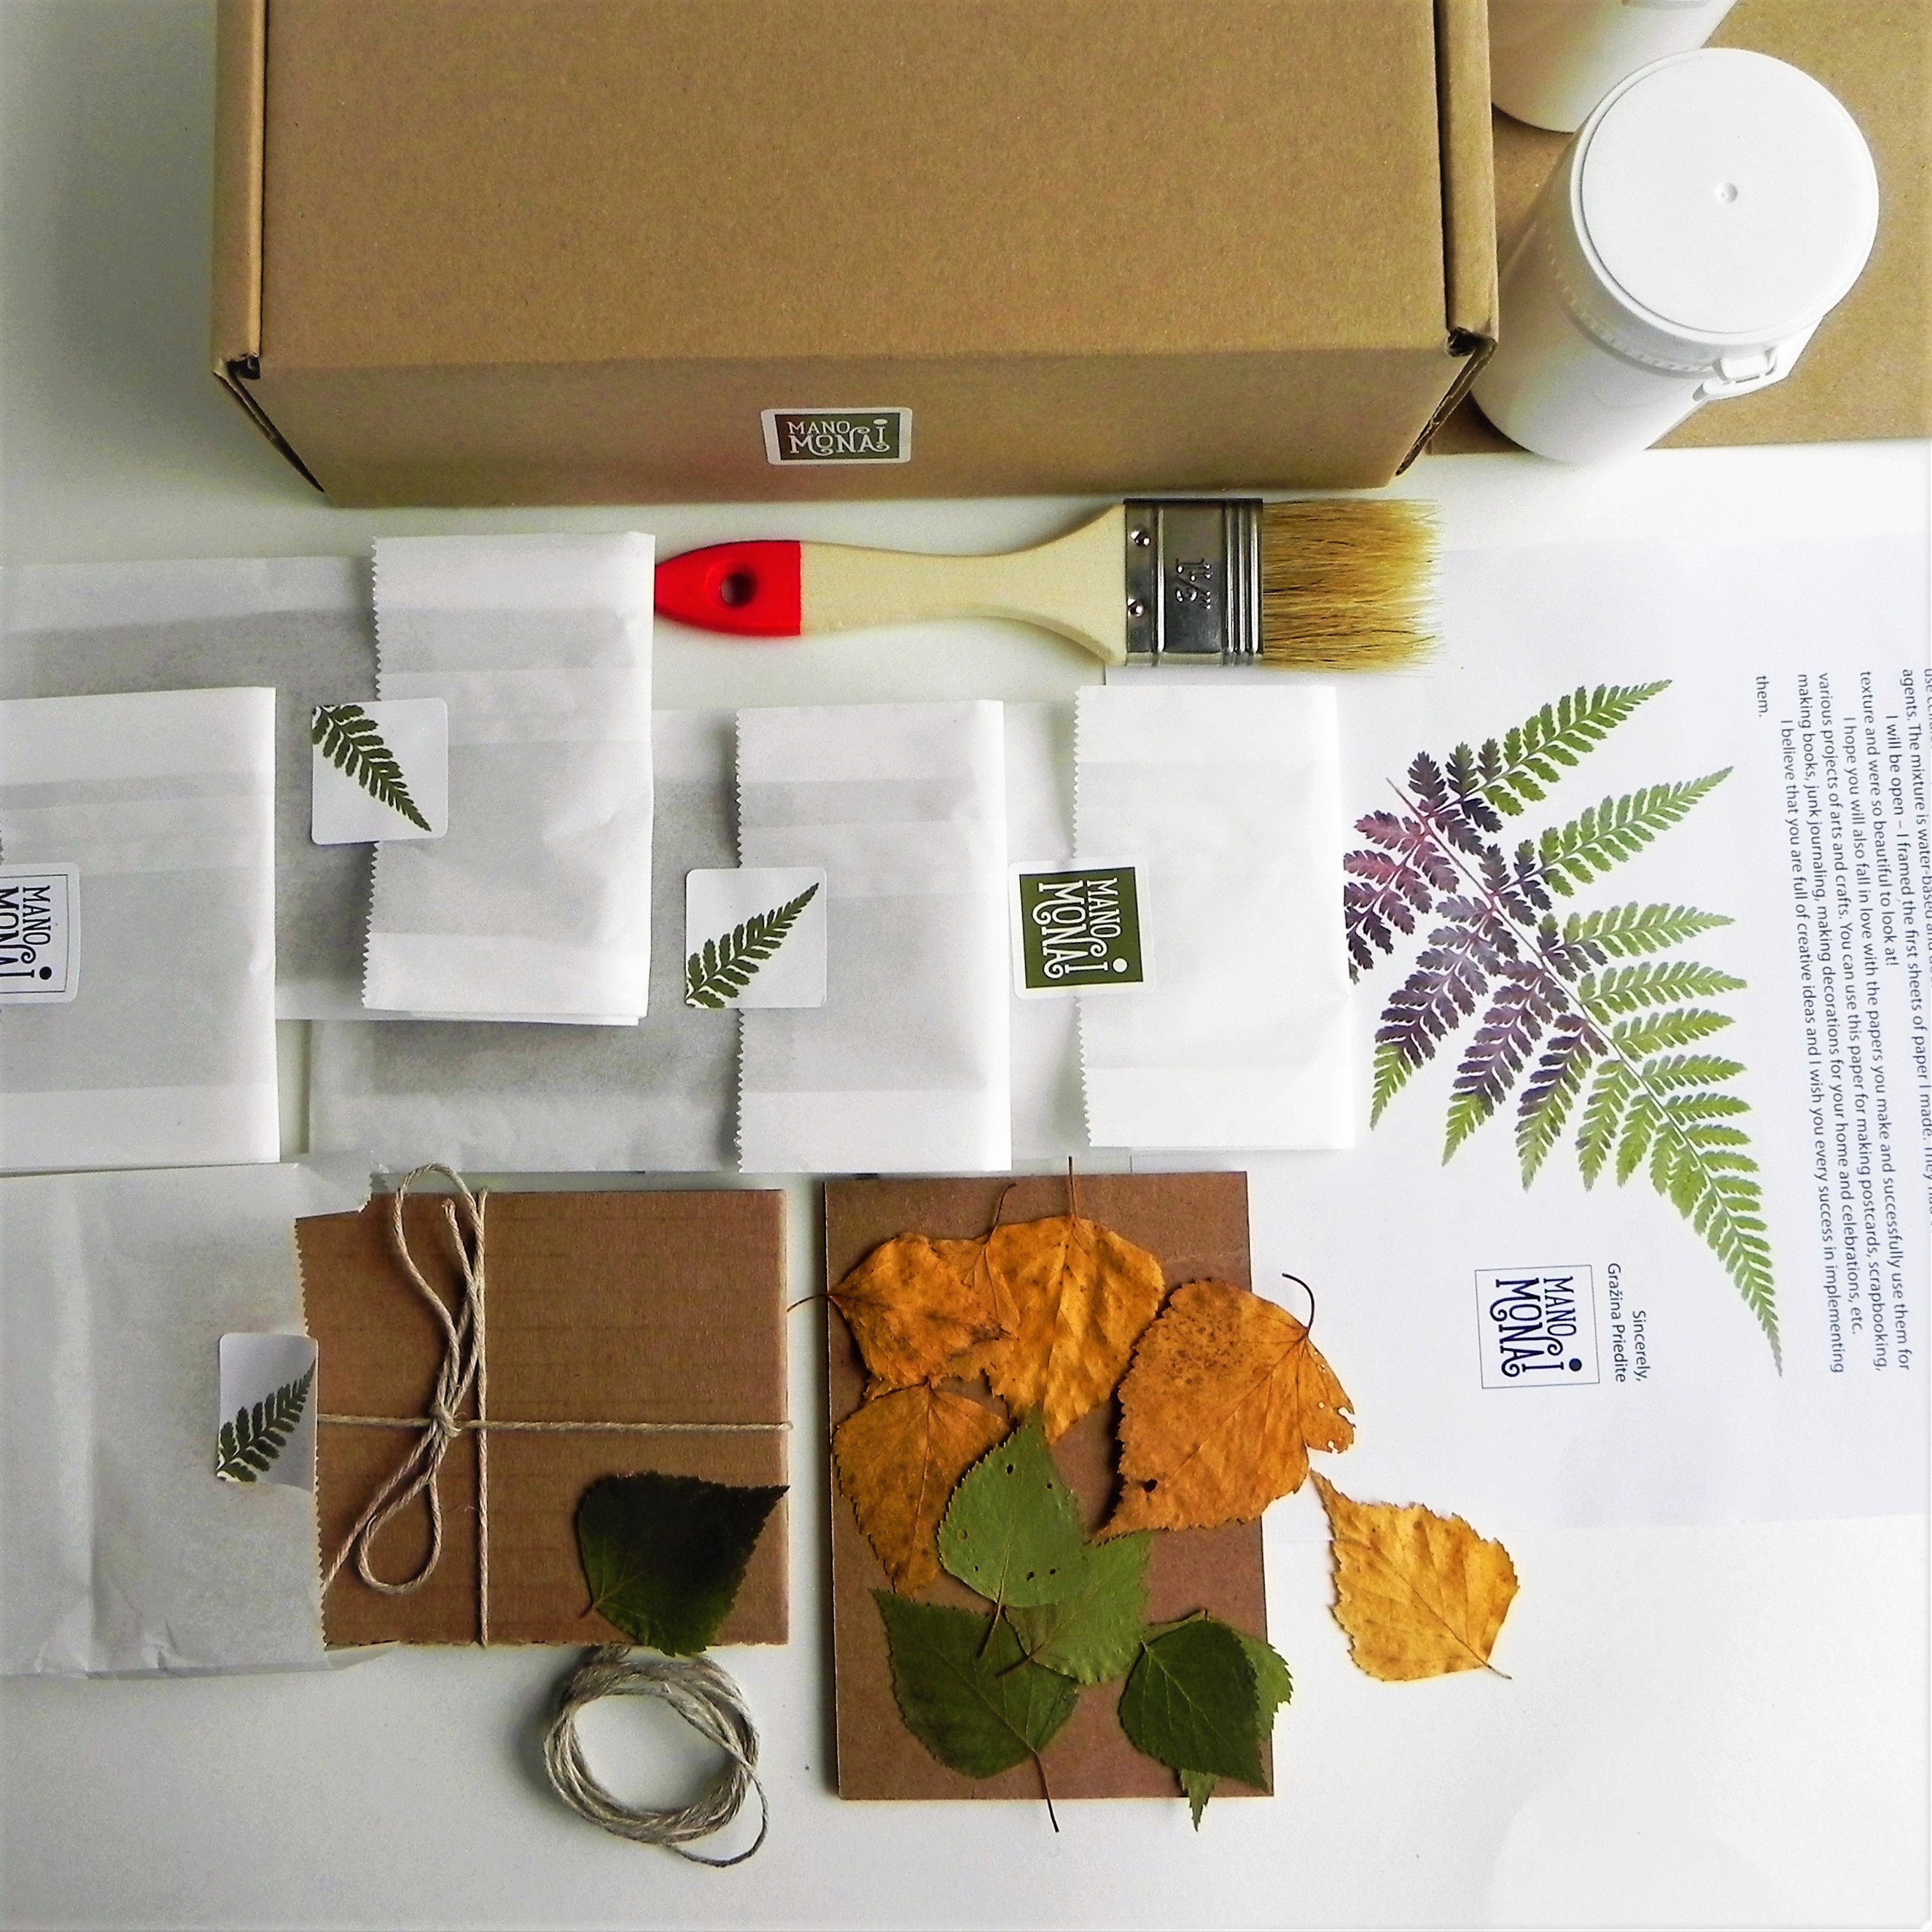 Adult DIY Craft Kit, Nautical Paper Craft Kit, Paper Cutting Kit 